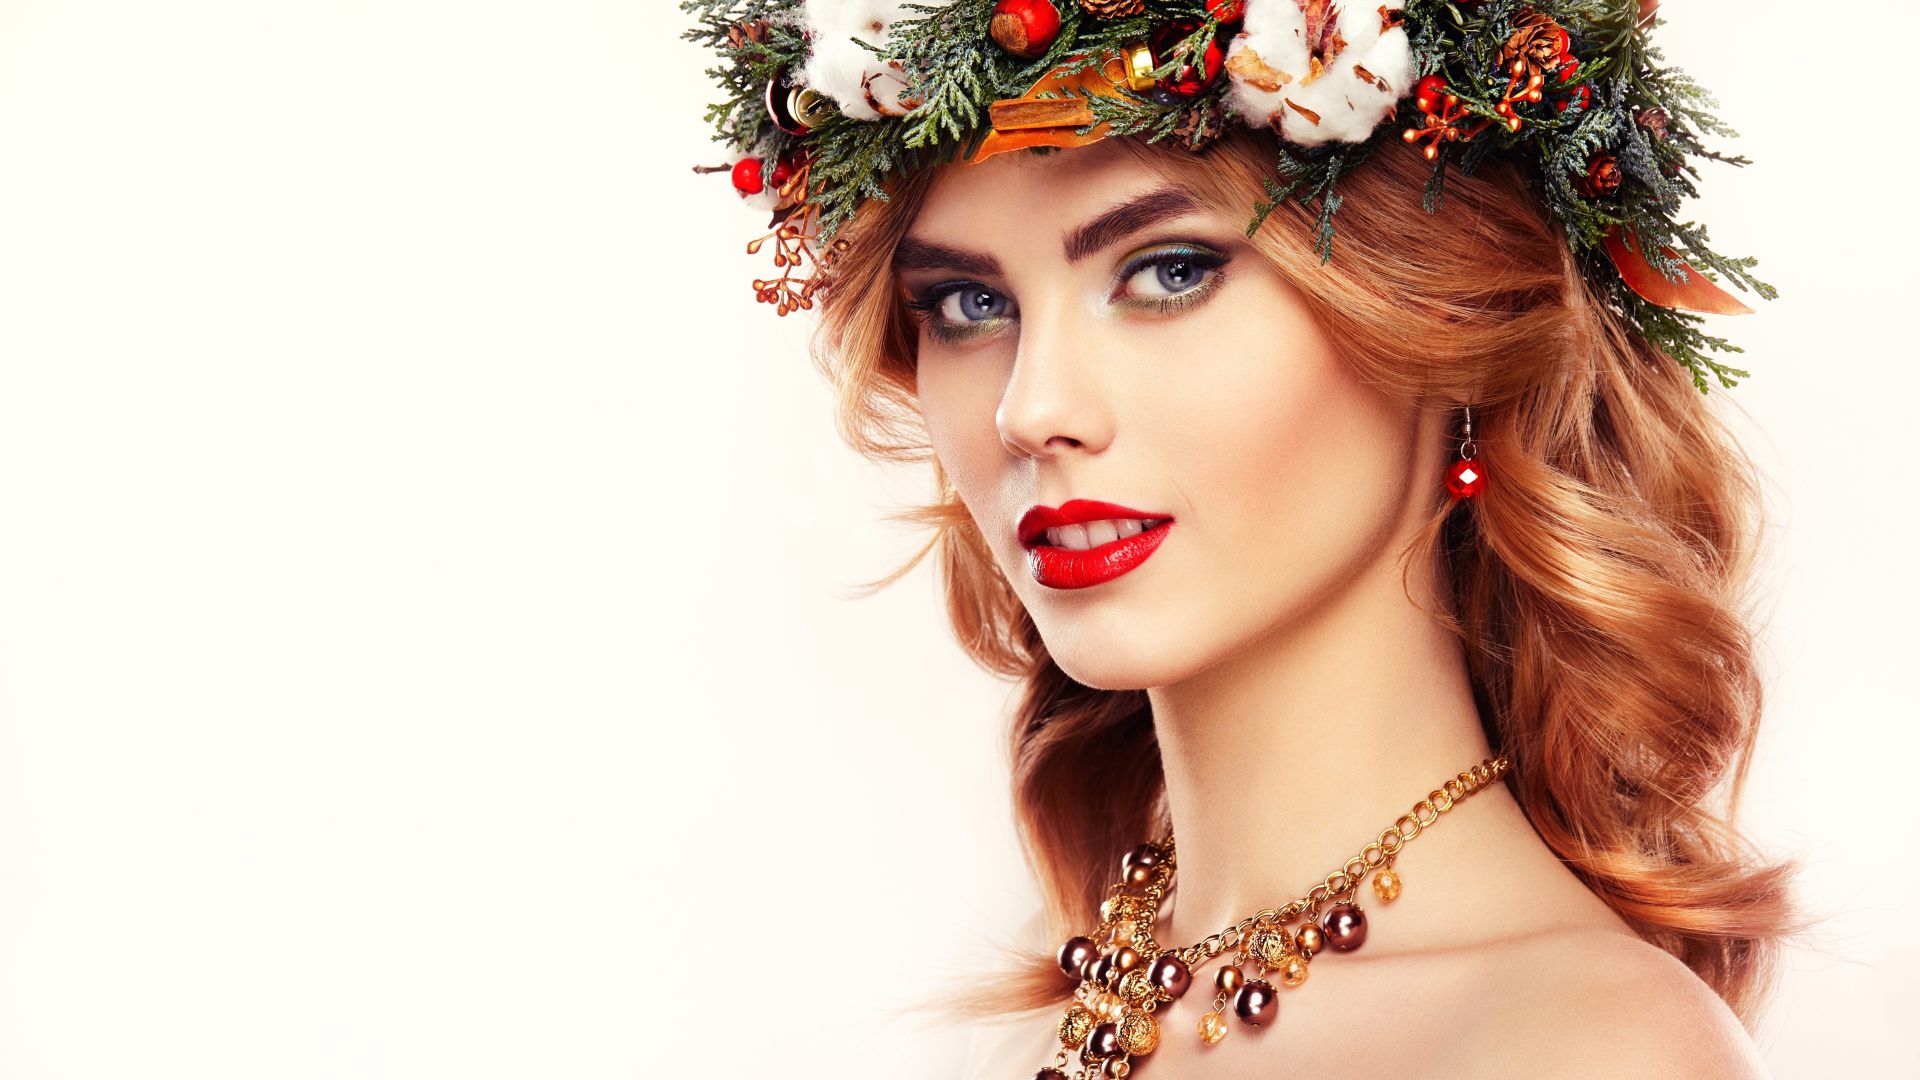 Wallpaper Red lipstick, flowers crown, girl model, 5k